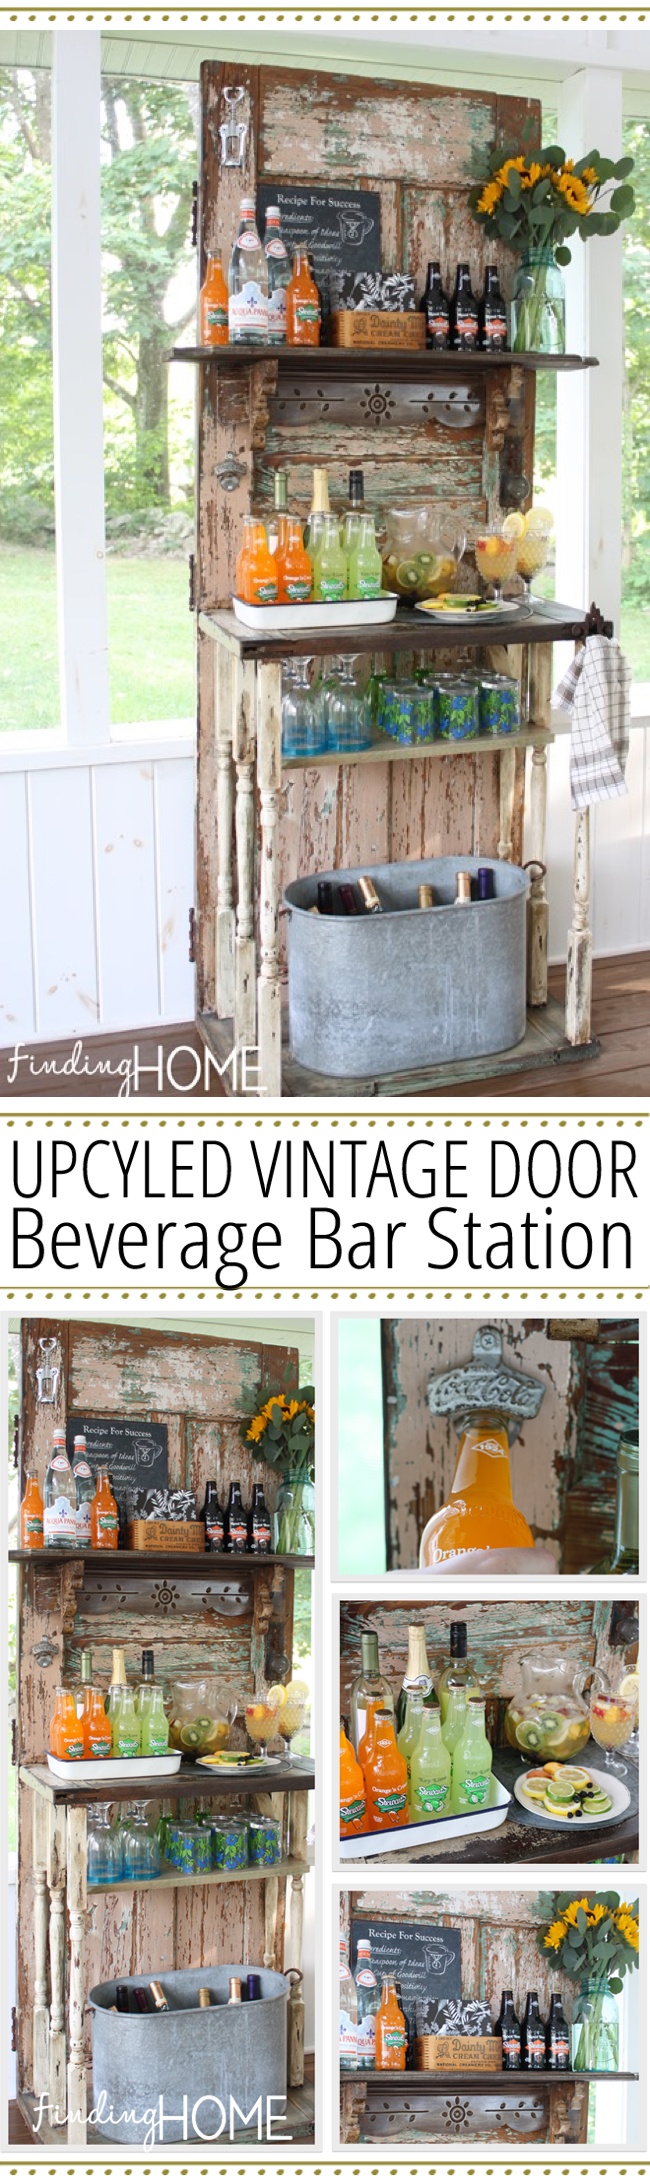 Upcycled Vintage Door Beverage Bar Station